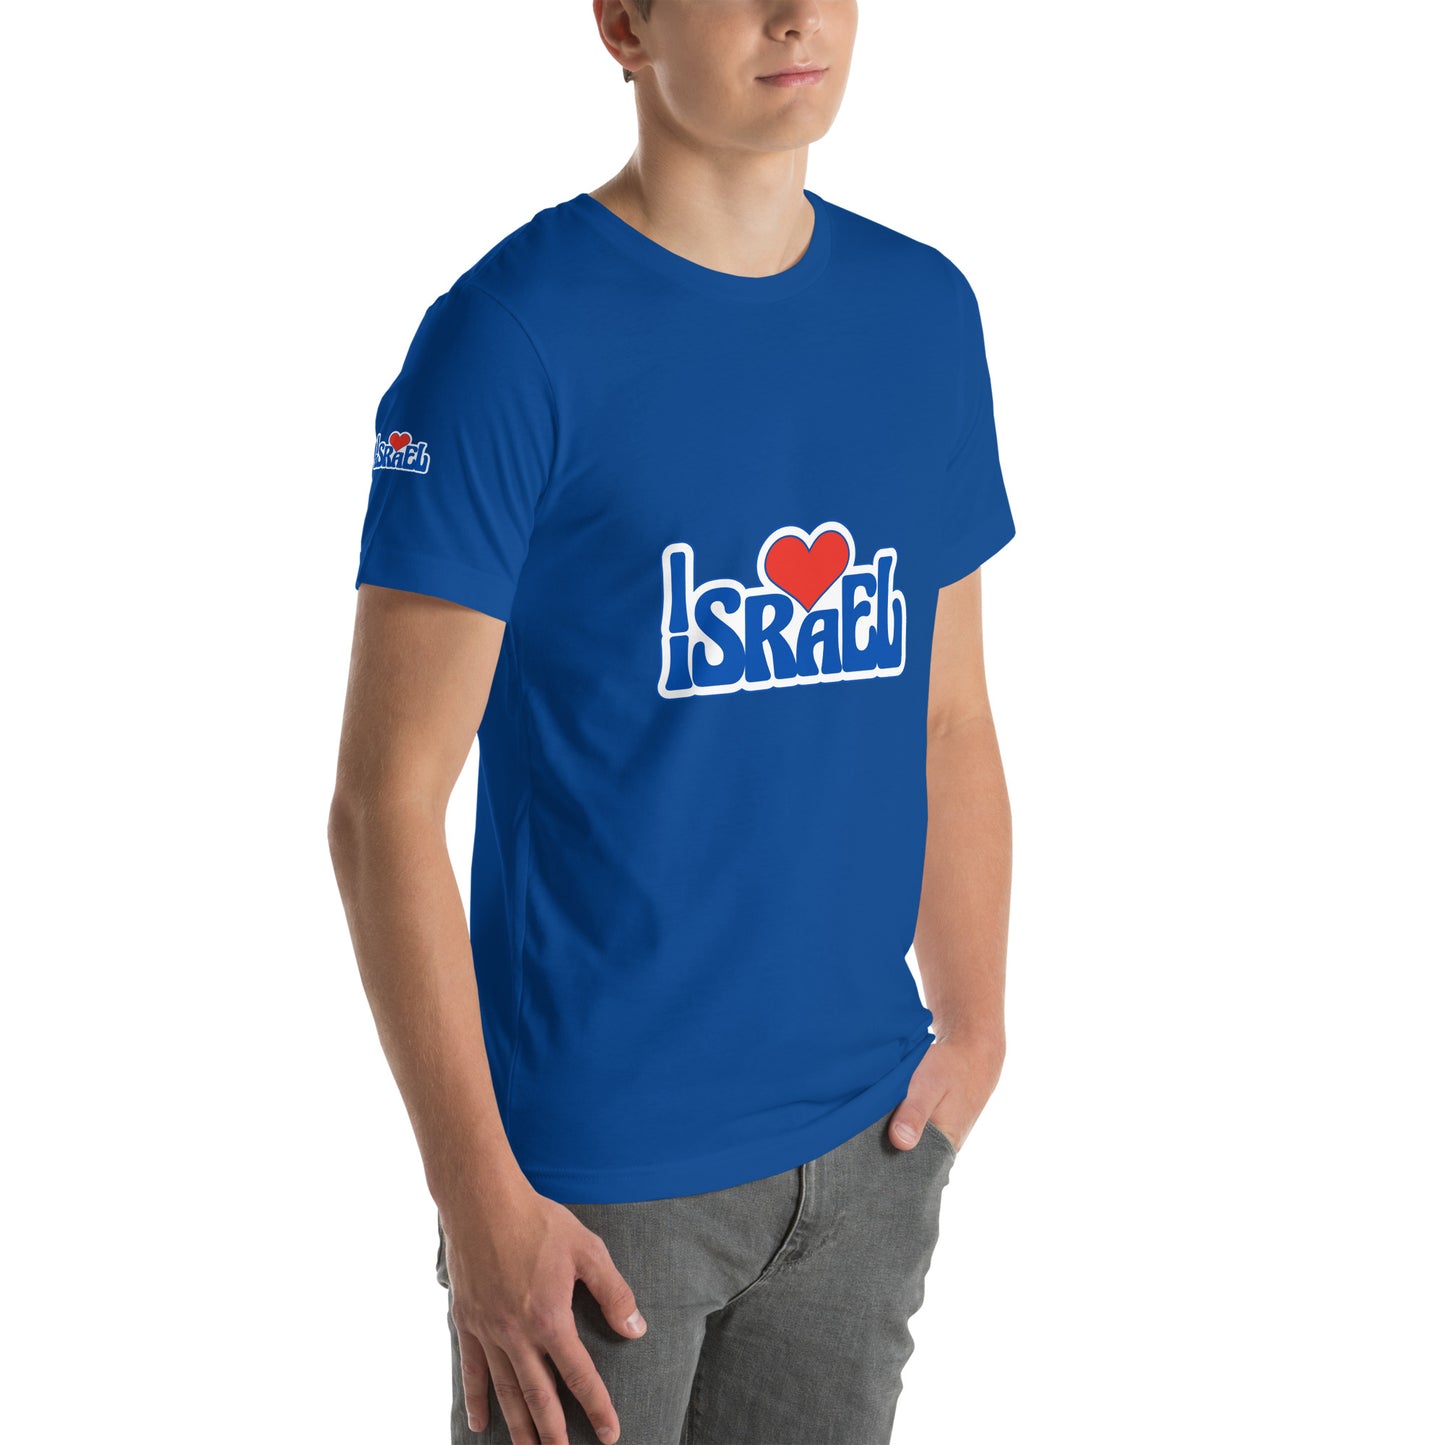 0-A-00 Israel heart Unisex t-shirt